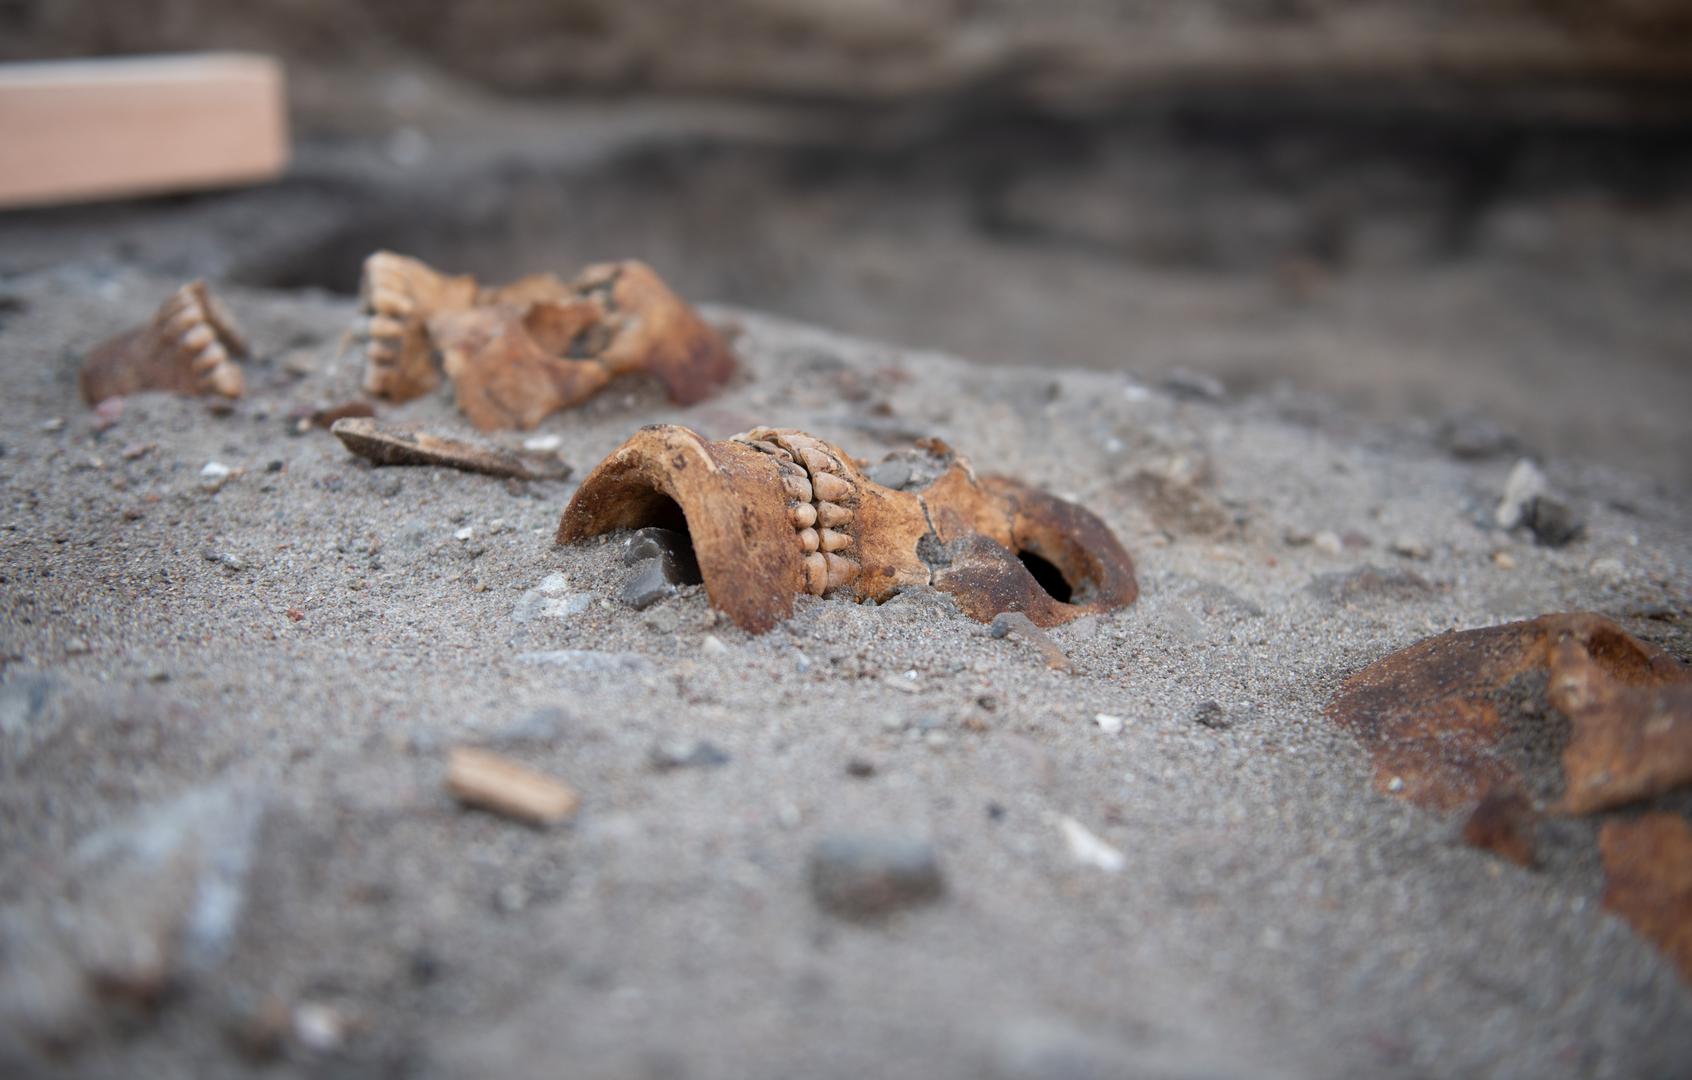 Njemački arheolozi pronašli su tri ljudske lubanje i jedan kostur u kamp-području Flüggerteich na otoku Fehmarnu u Baltičkom moru.

